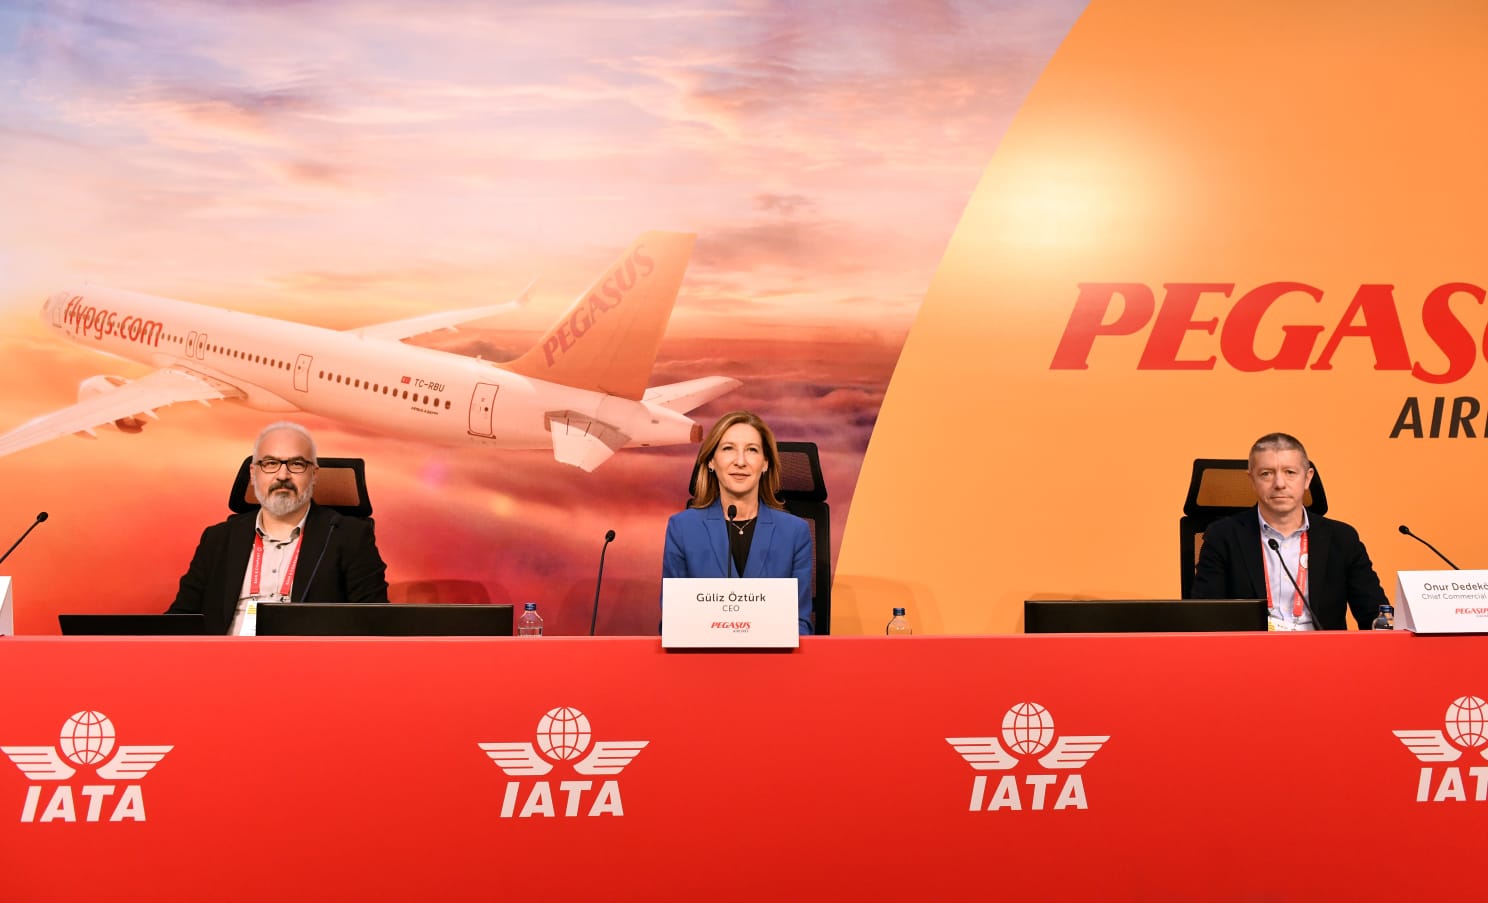 Pegasus Hava Yolları CEO’su Güliz Öztürk: “2022 yılı performansımızla dünyanın operasyonel kârlılığı en yüksek hava yolu şirketi olduk”